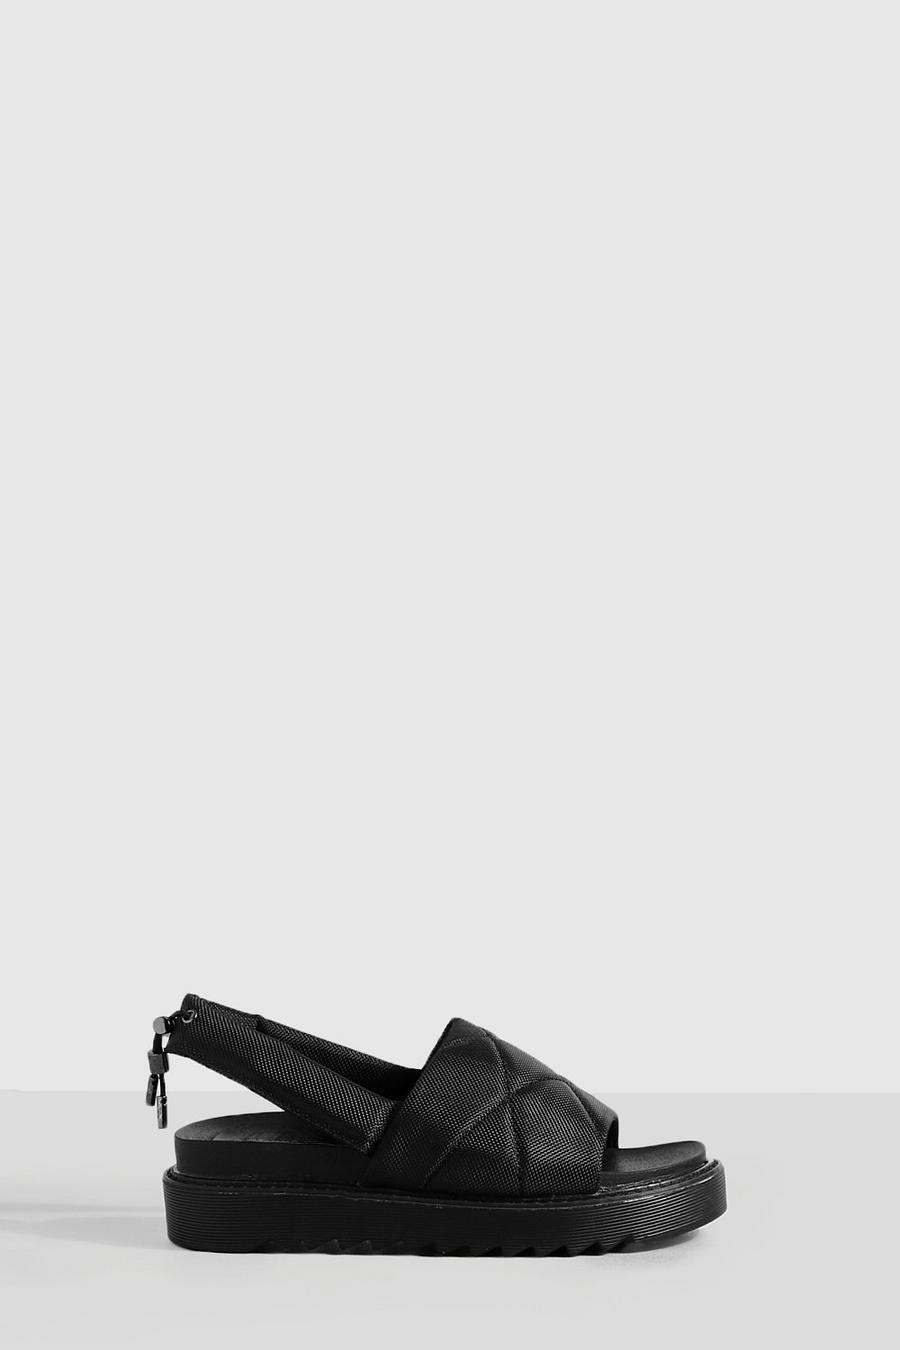 Black Quilted Slingback Flatform Sandals